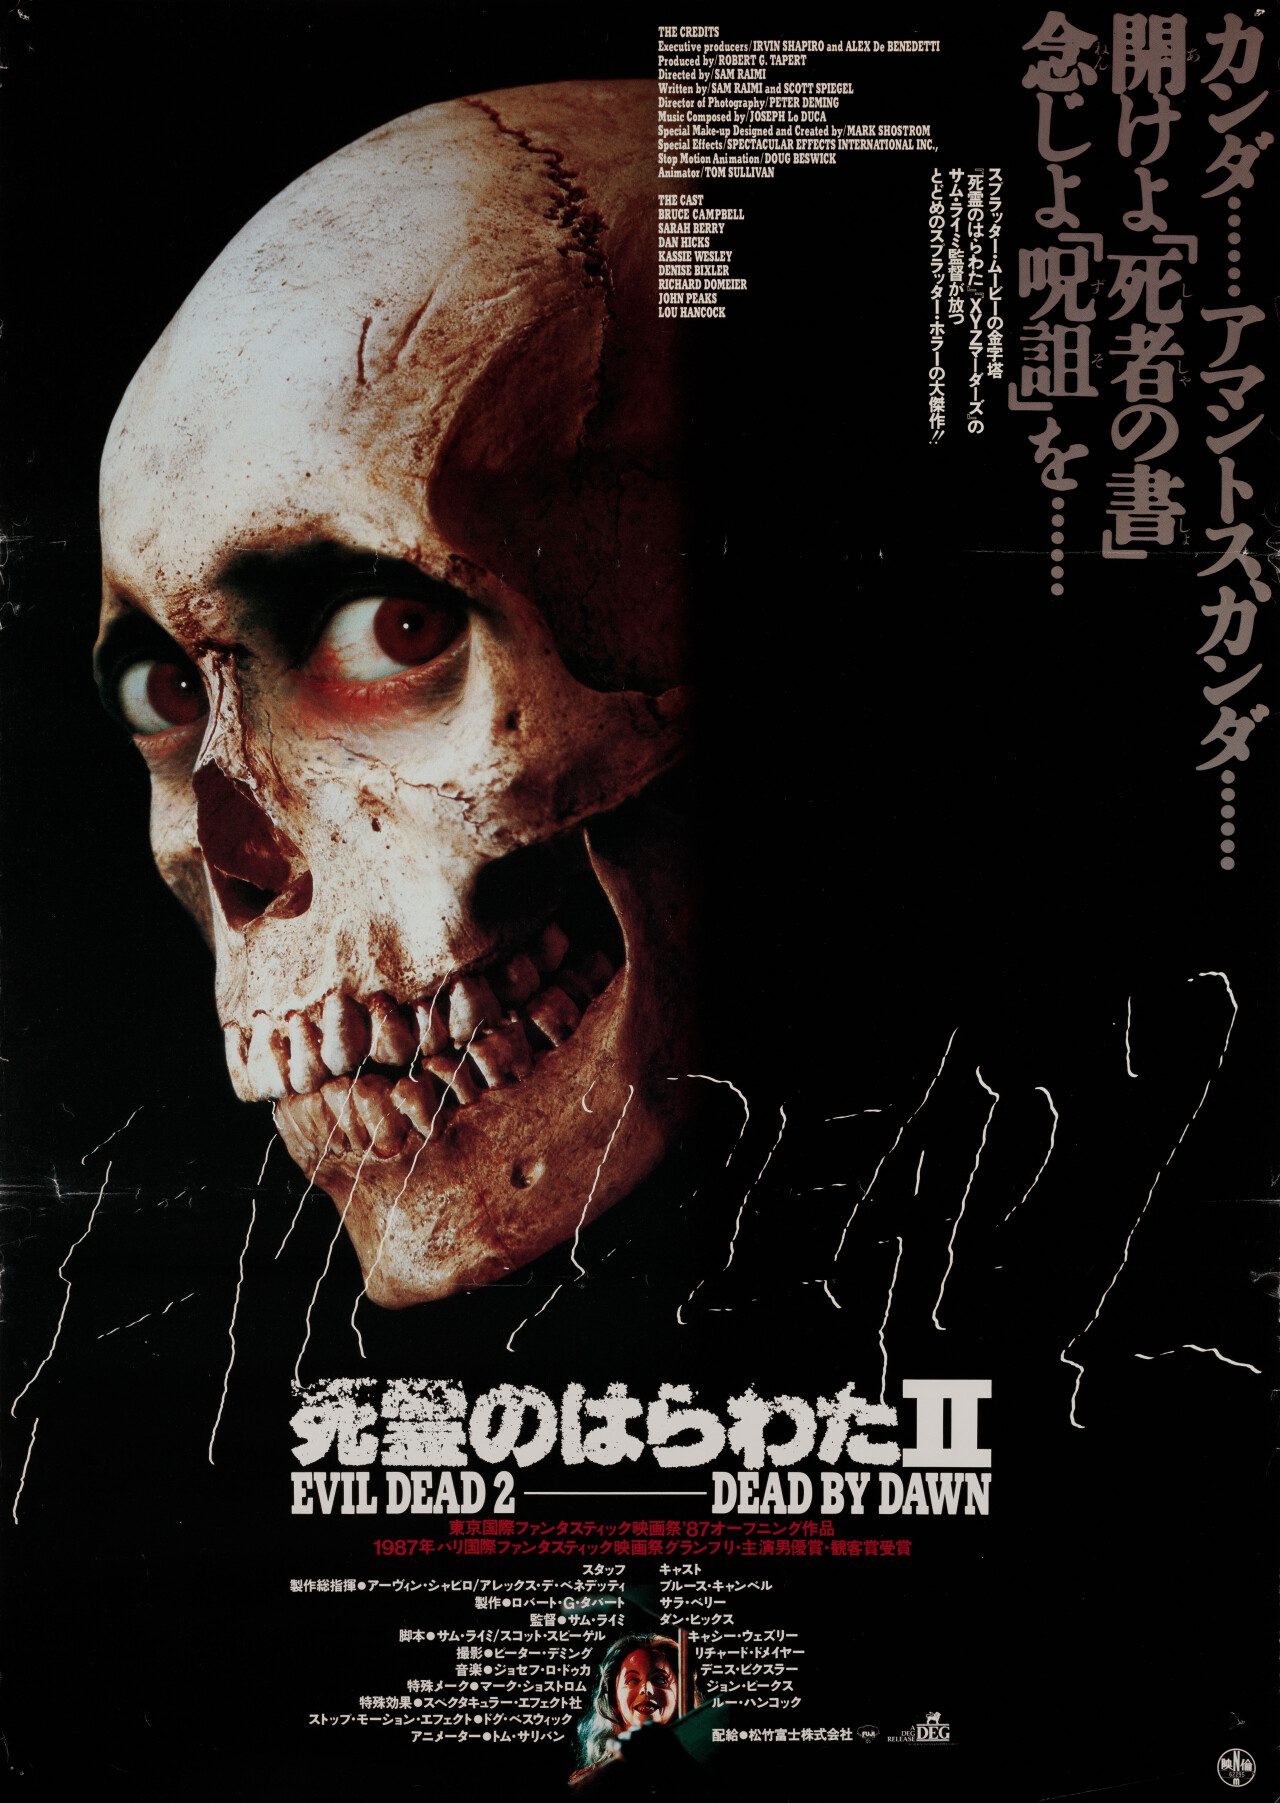 Зловещие мертвецы 2 (Evil Dead II, 1987), режиссёр Сэм Рэйми, японский постер к фильму (ужасы, 1987 год)